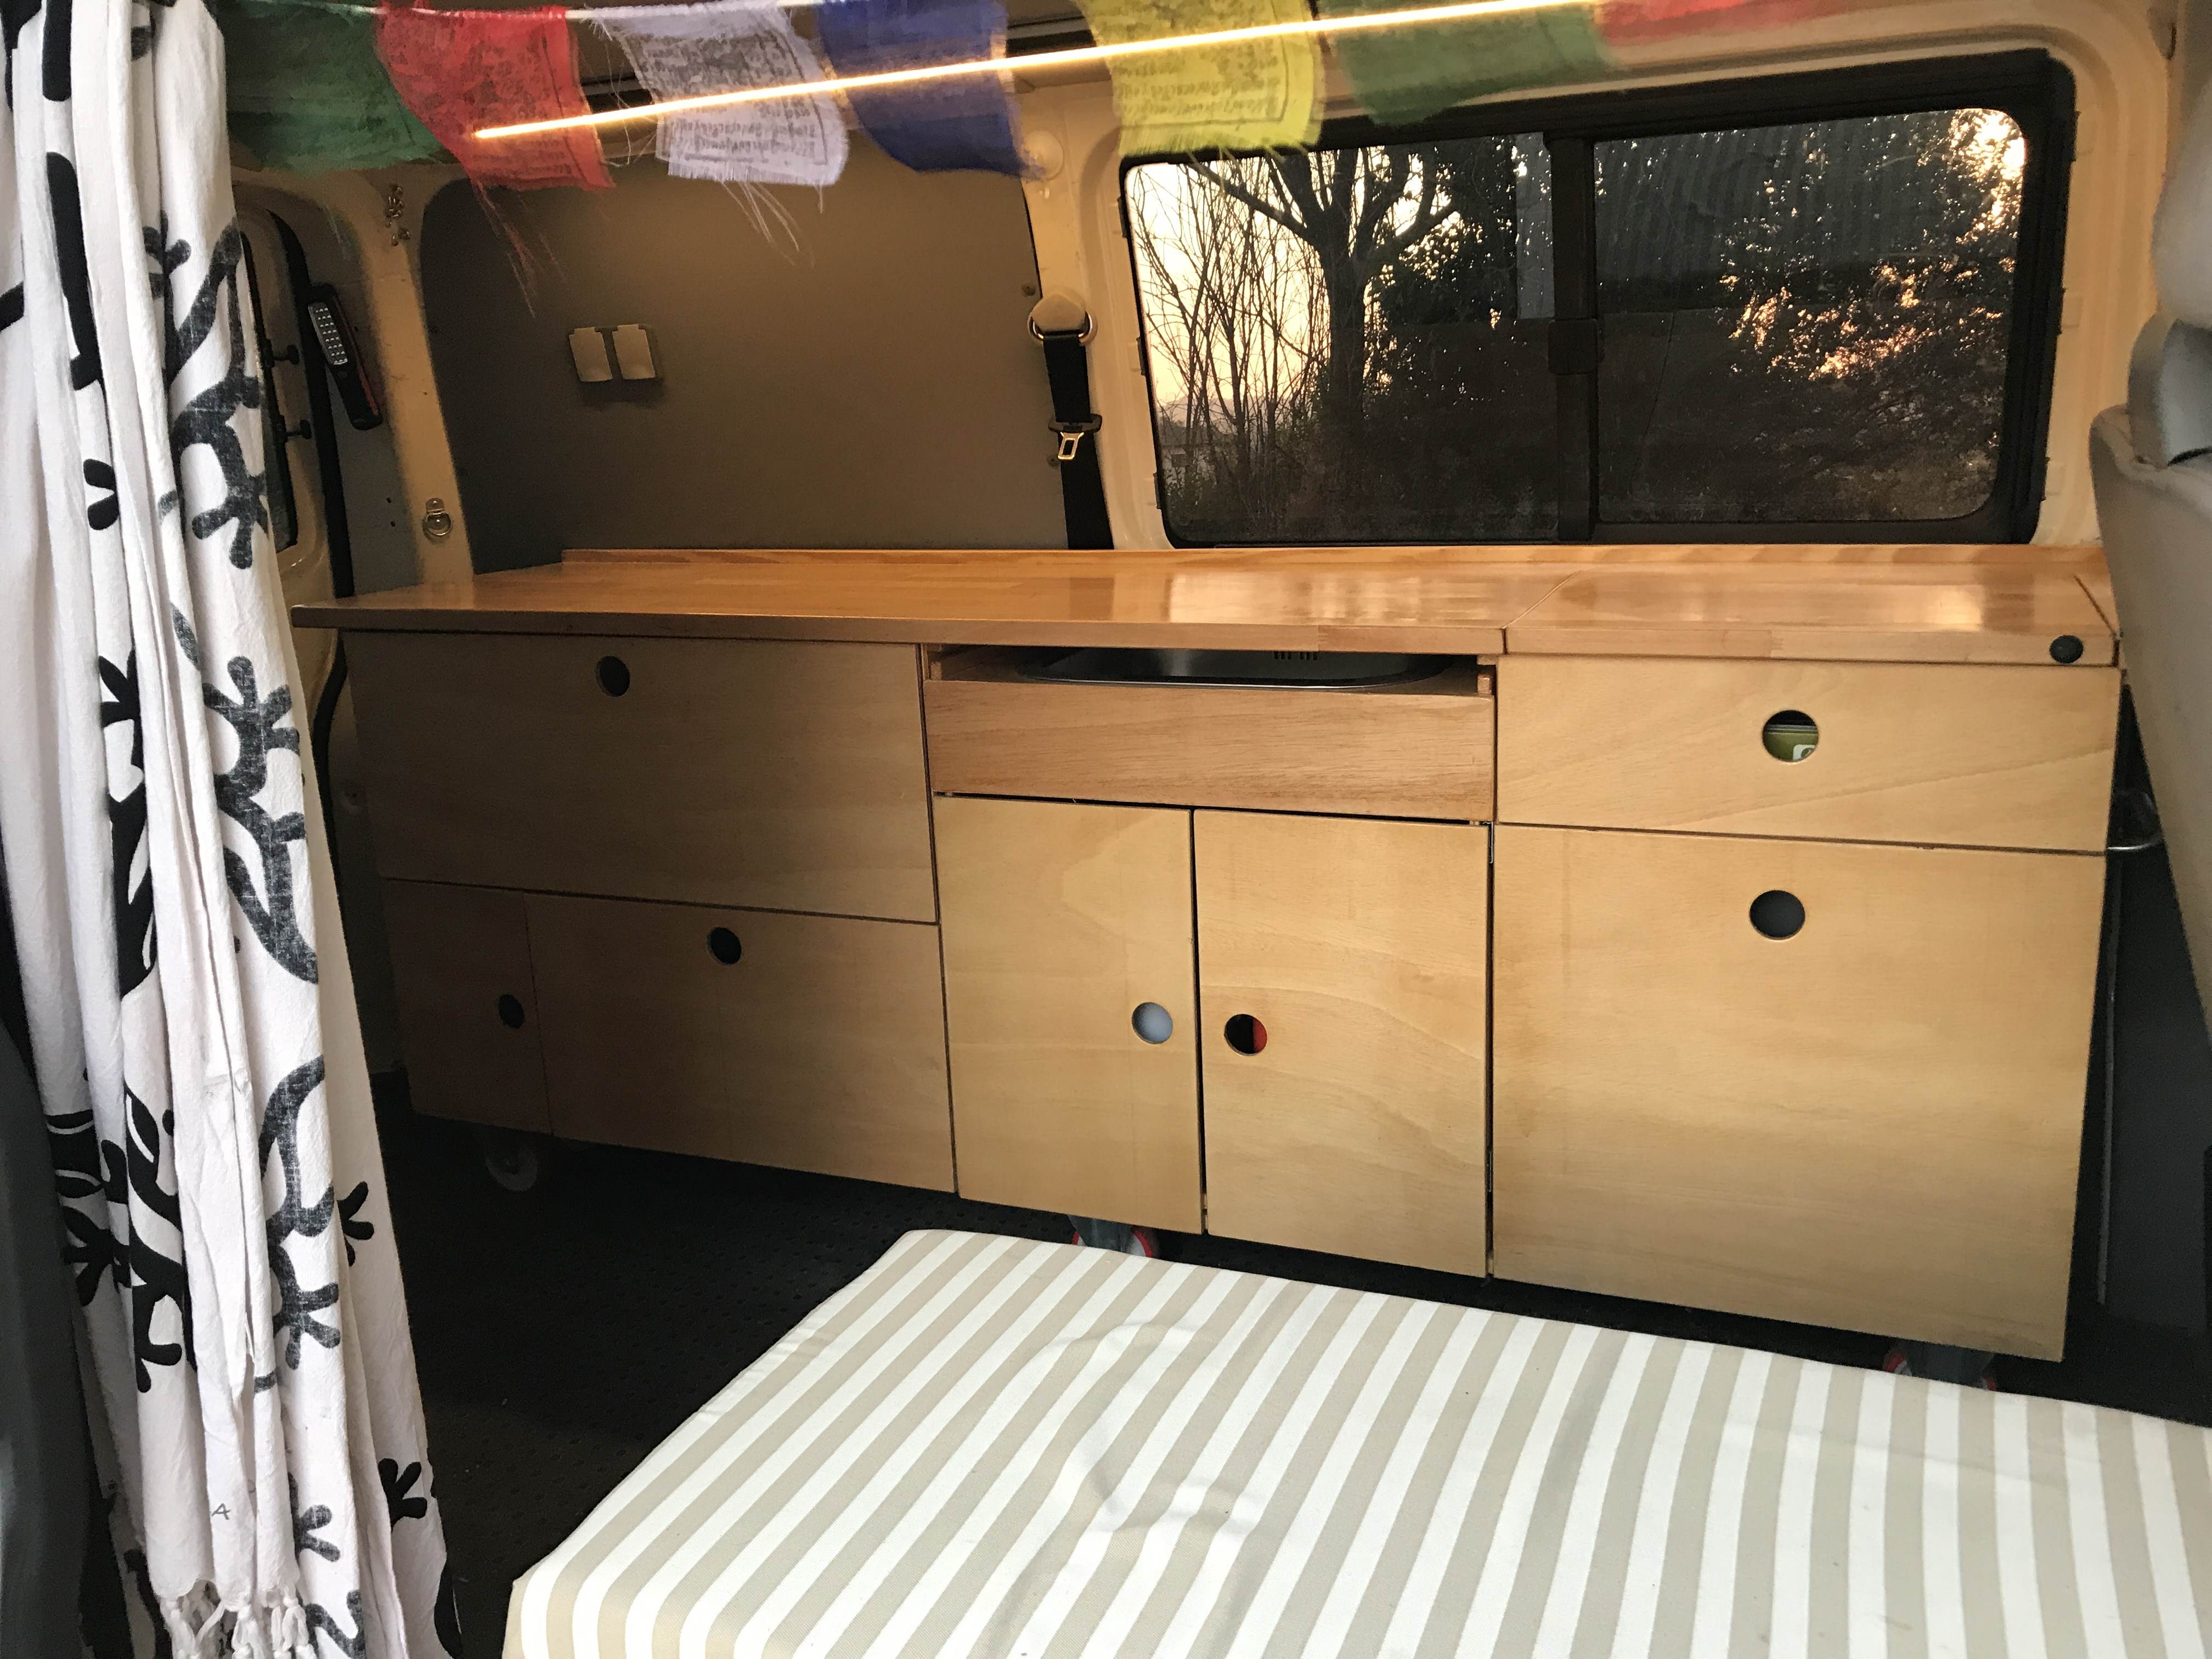 Mueble modular en kit para camperizar tu furgoneta - CAMPERMUEBLES